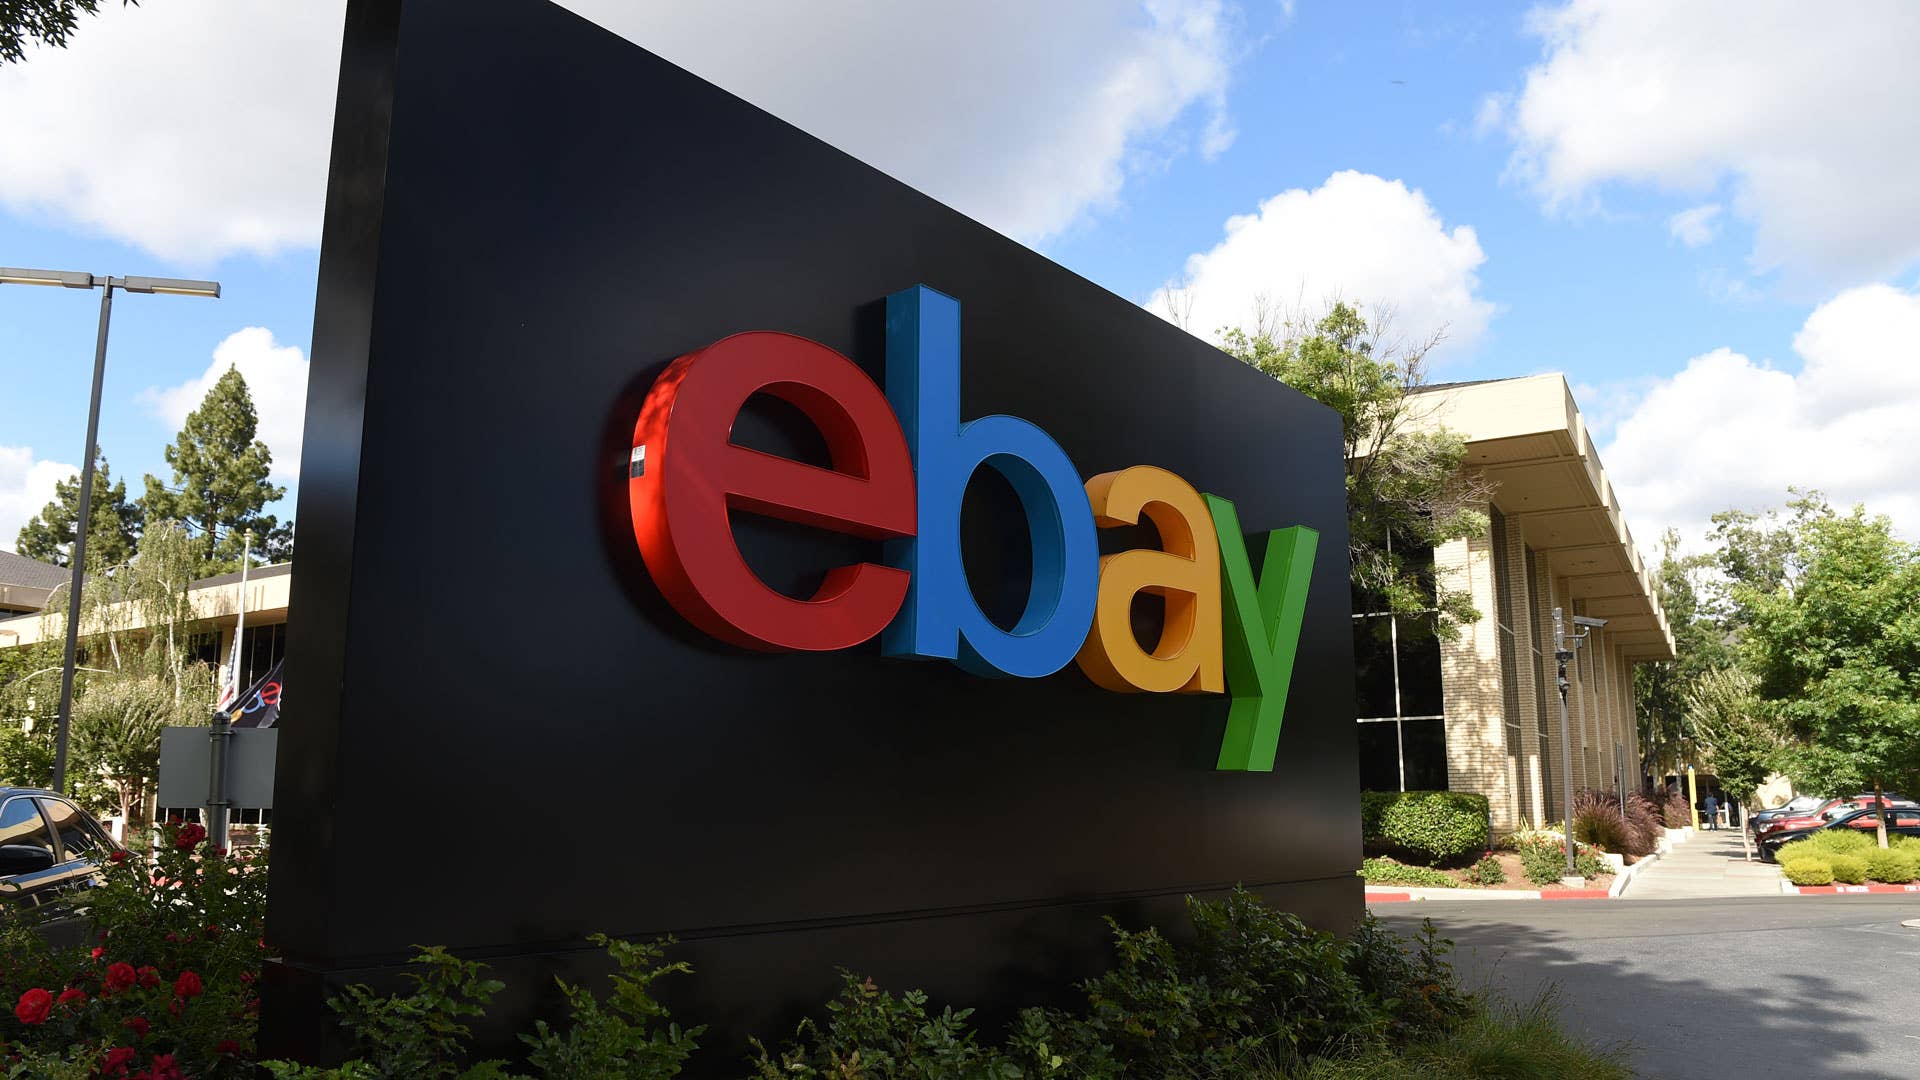 eBay headquarters